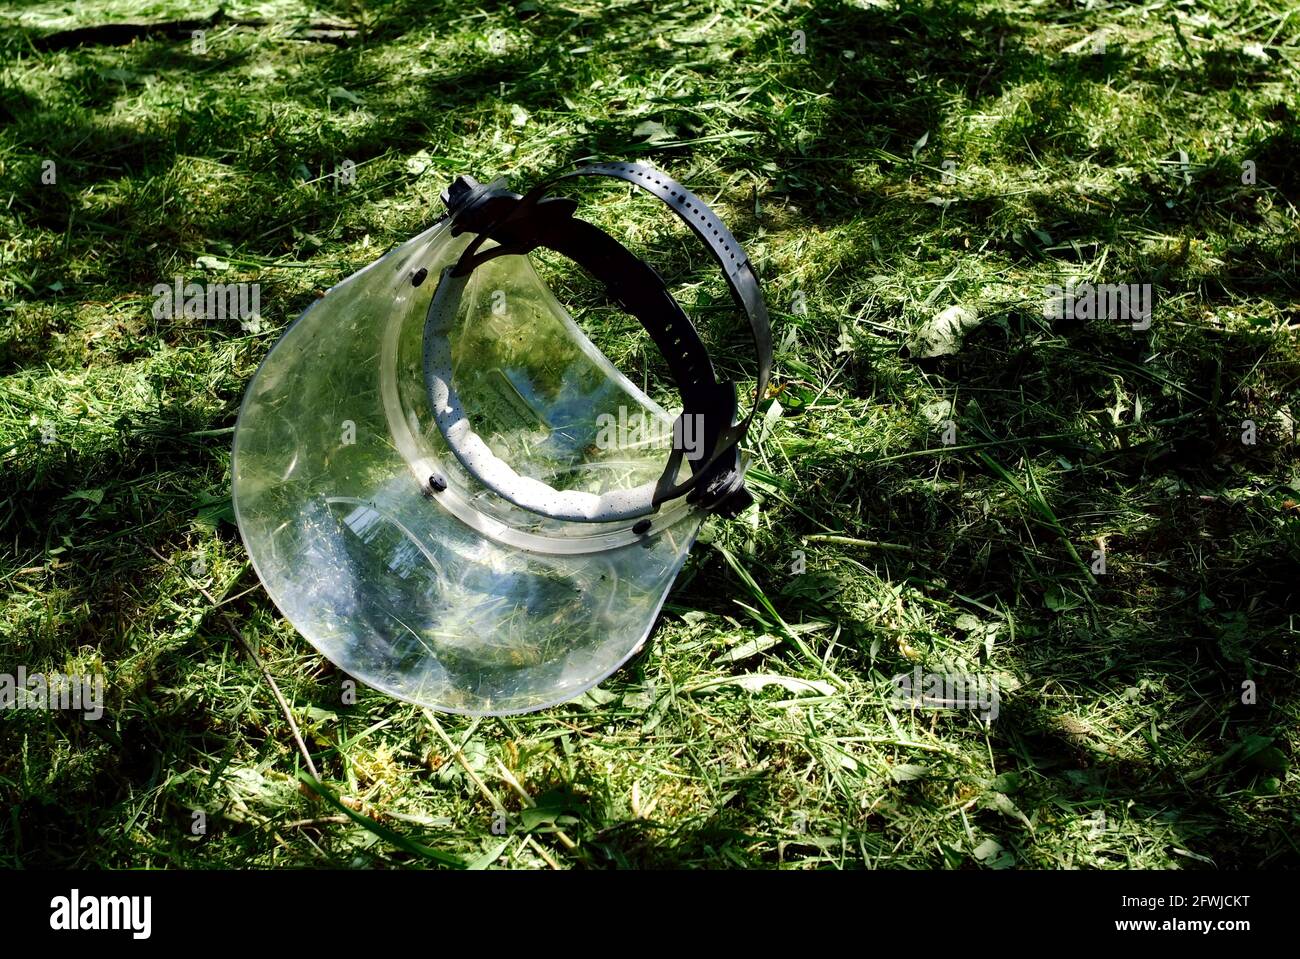 máscara protectora de plástico para segar hierba, en verano Foto de stock